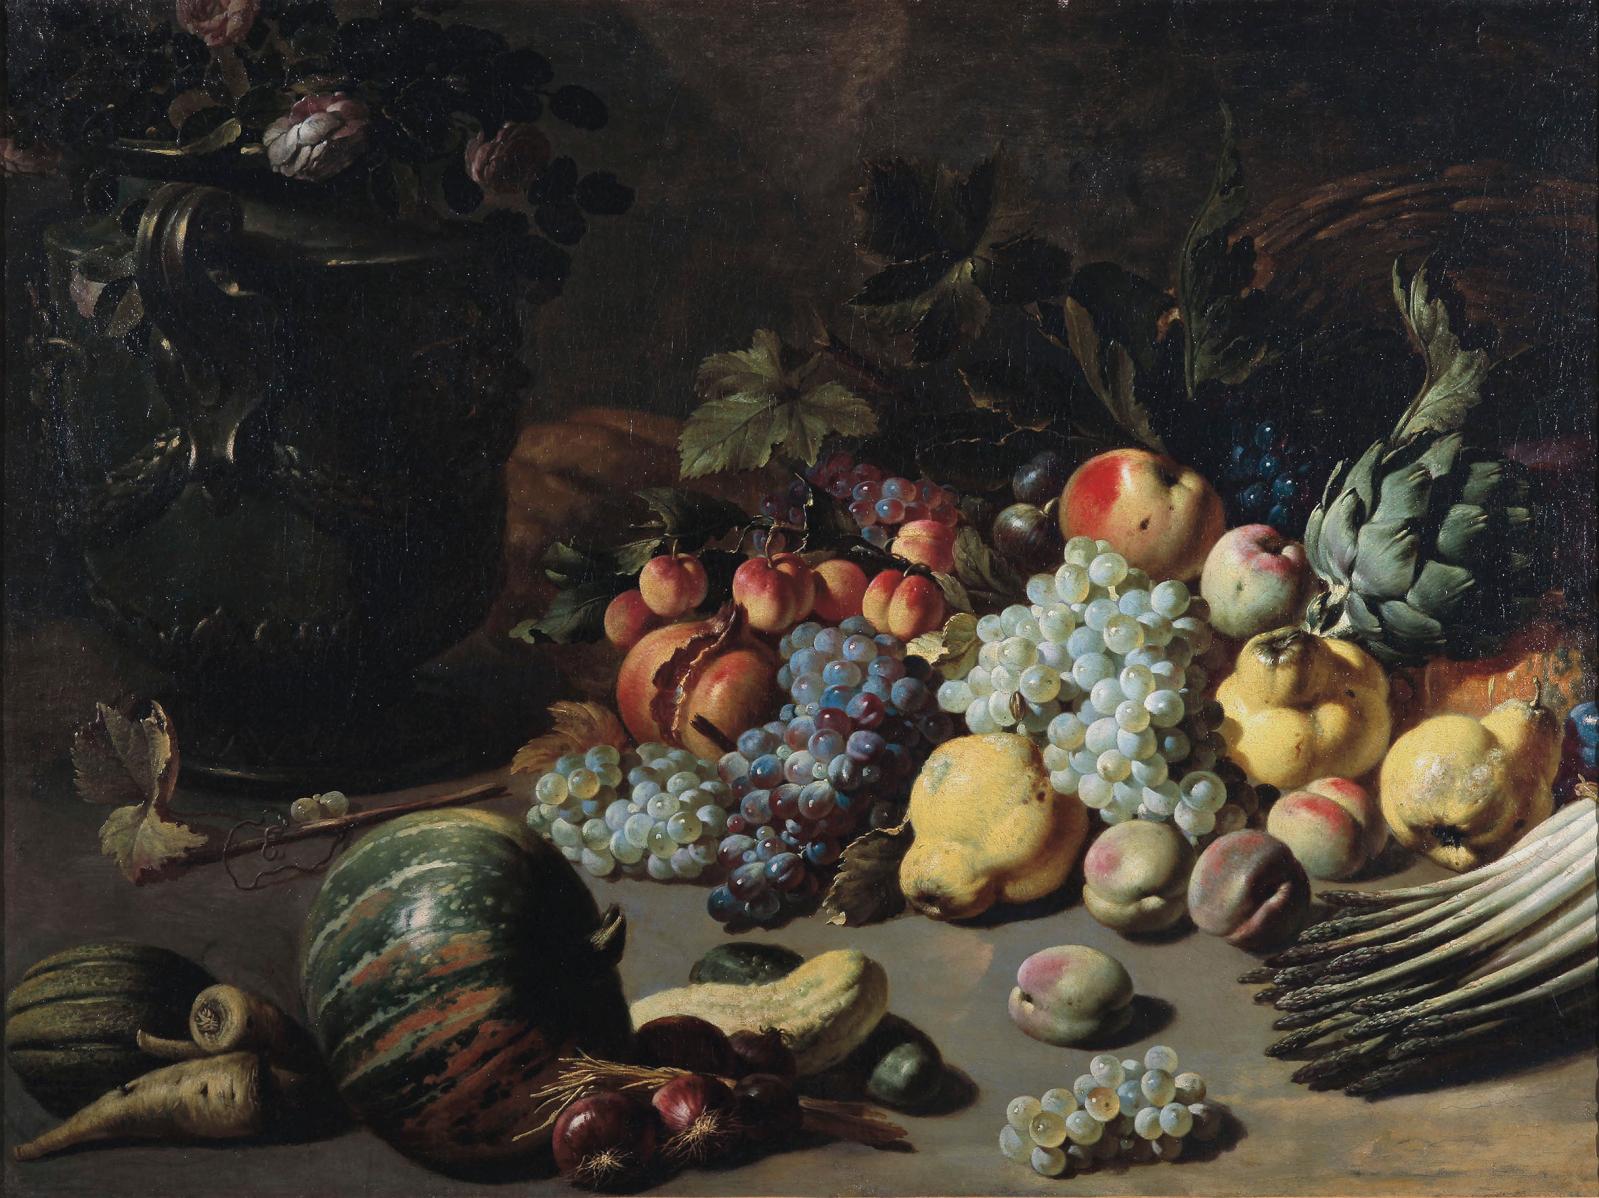 Pieter Van Boucle, Nature morte aux fruits et légumes, vers 1650, huile sur toile. © Musée des beaux-arts de Dole/Henri Bertand 